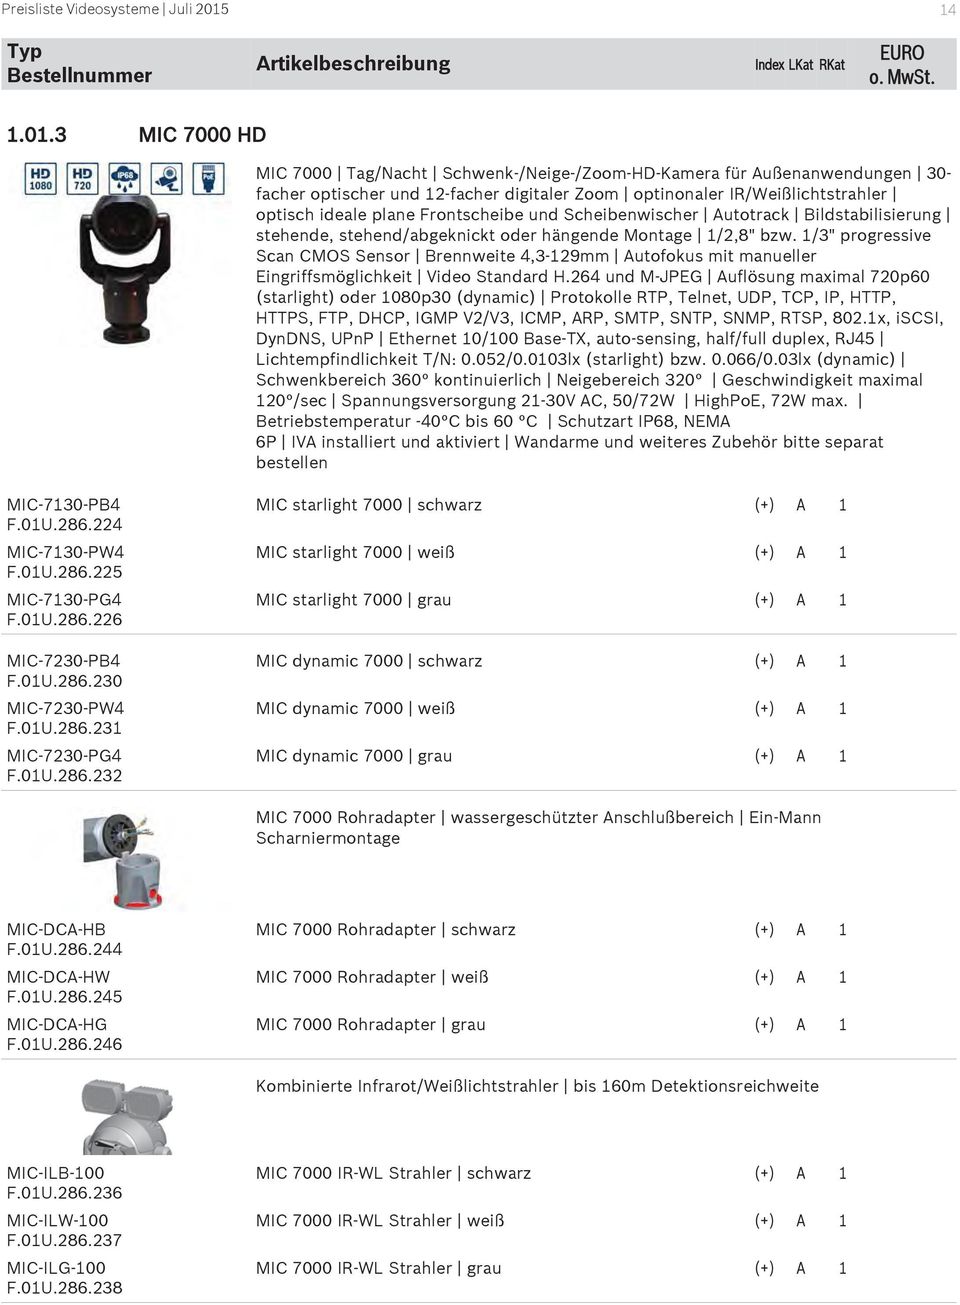 1/3" progressive Scan CMOS Sensor Brennweite 4,3-129mm Autofokus mit manueller Eingriffsmöglichkeit Video Standard H.